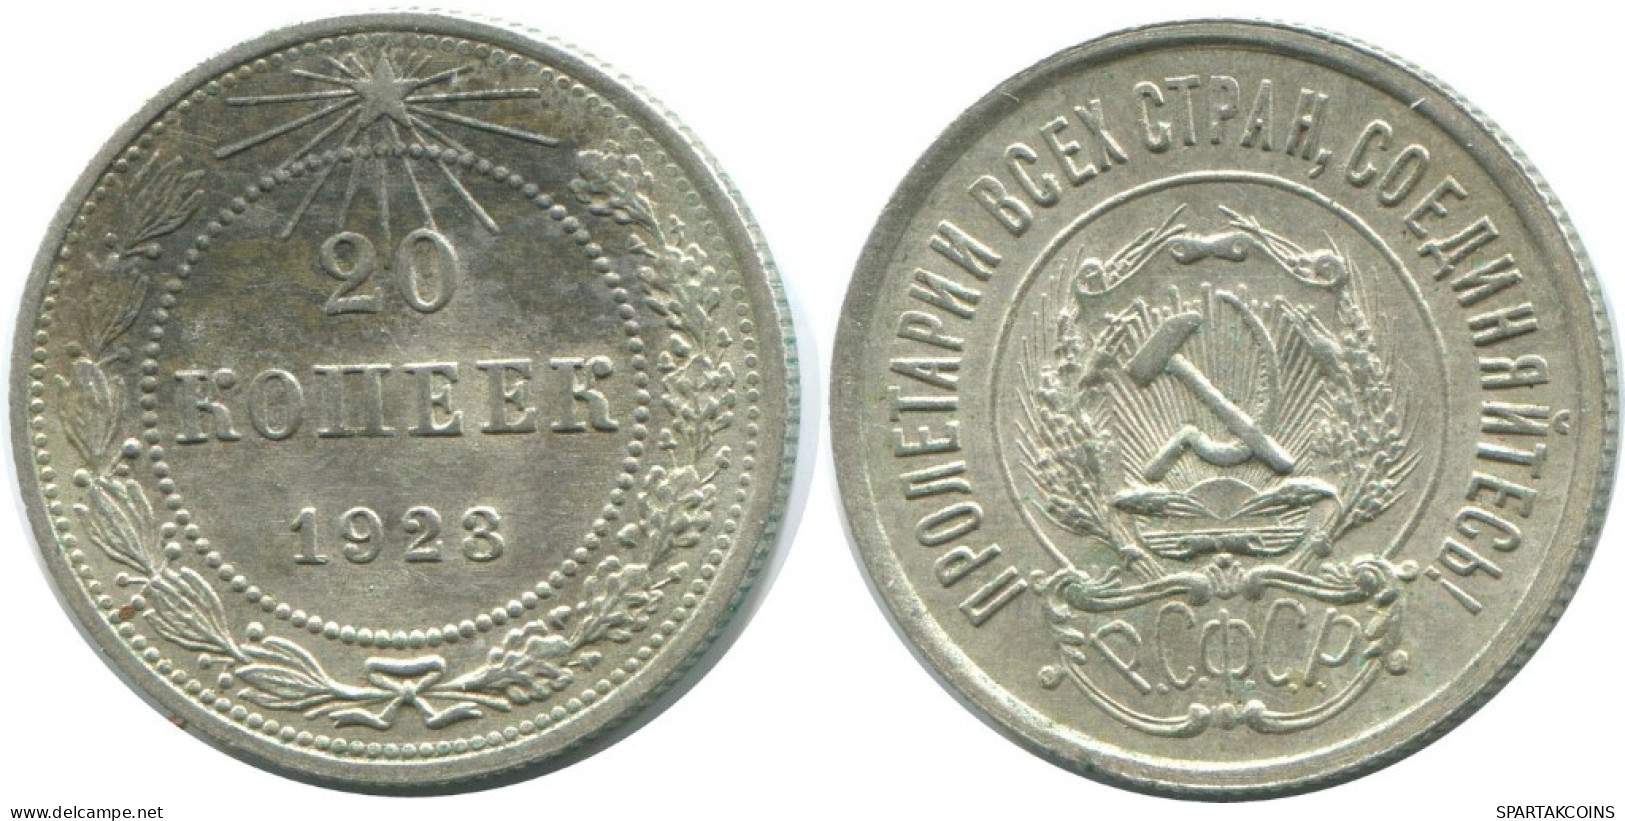 20 KOPEKS 1923 RUSSLAND RUSSIA RSFSR SILBER Münze HIGH GRADE #AF485.4.D.A - Russia